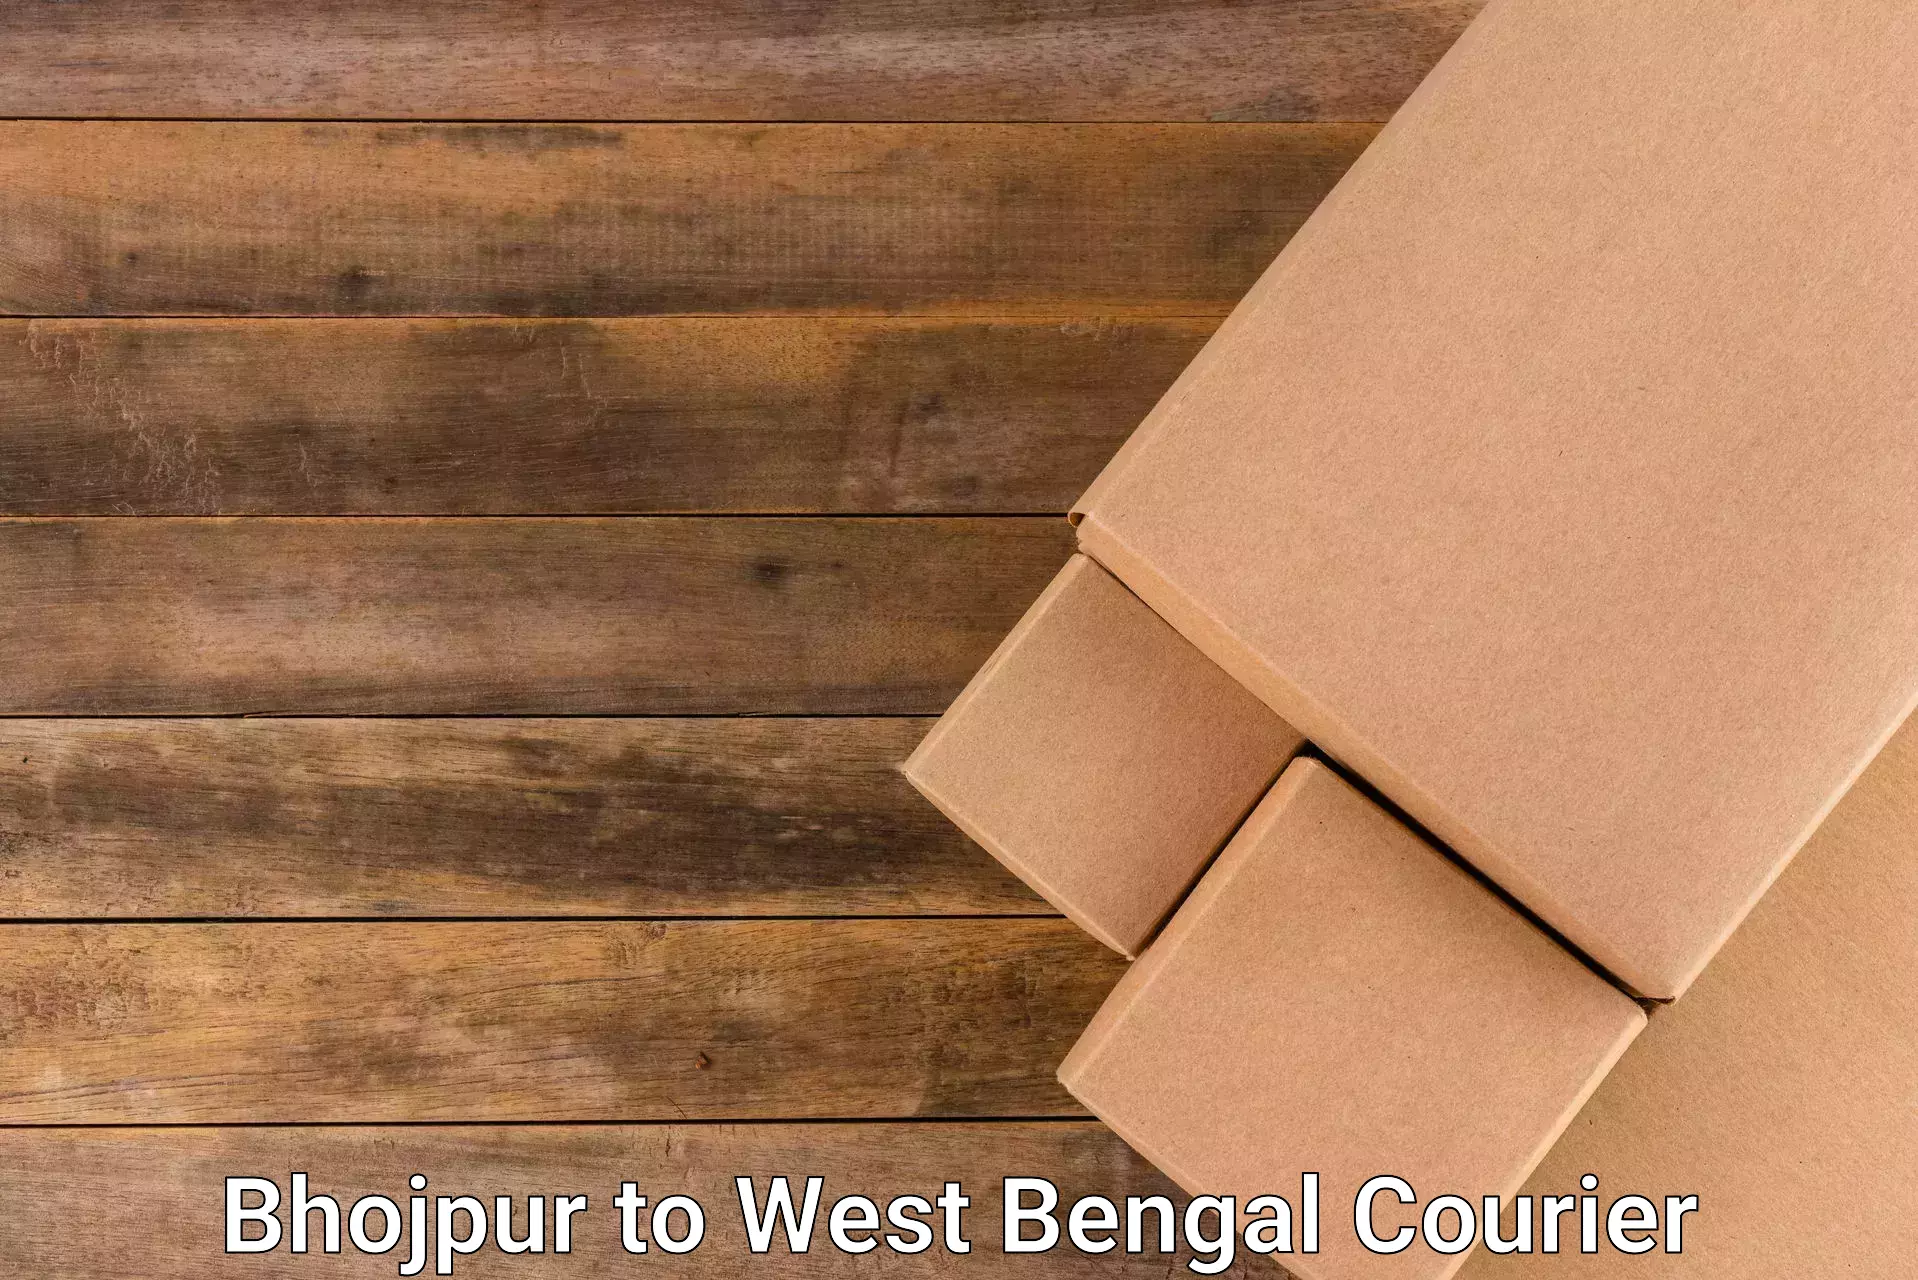 Specialized shipment handling Bhojpur to Kharagpur